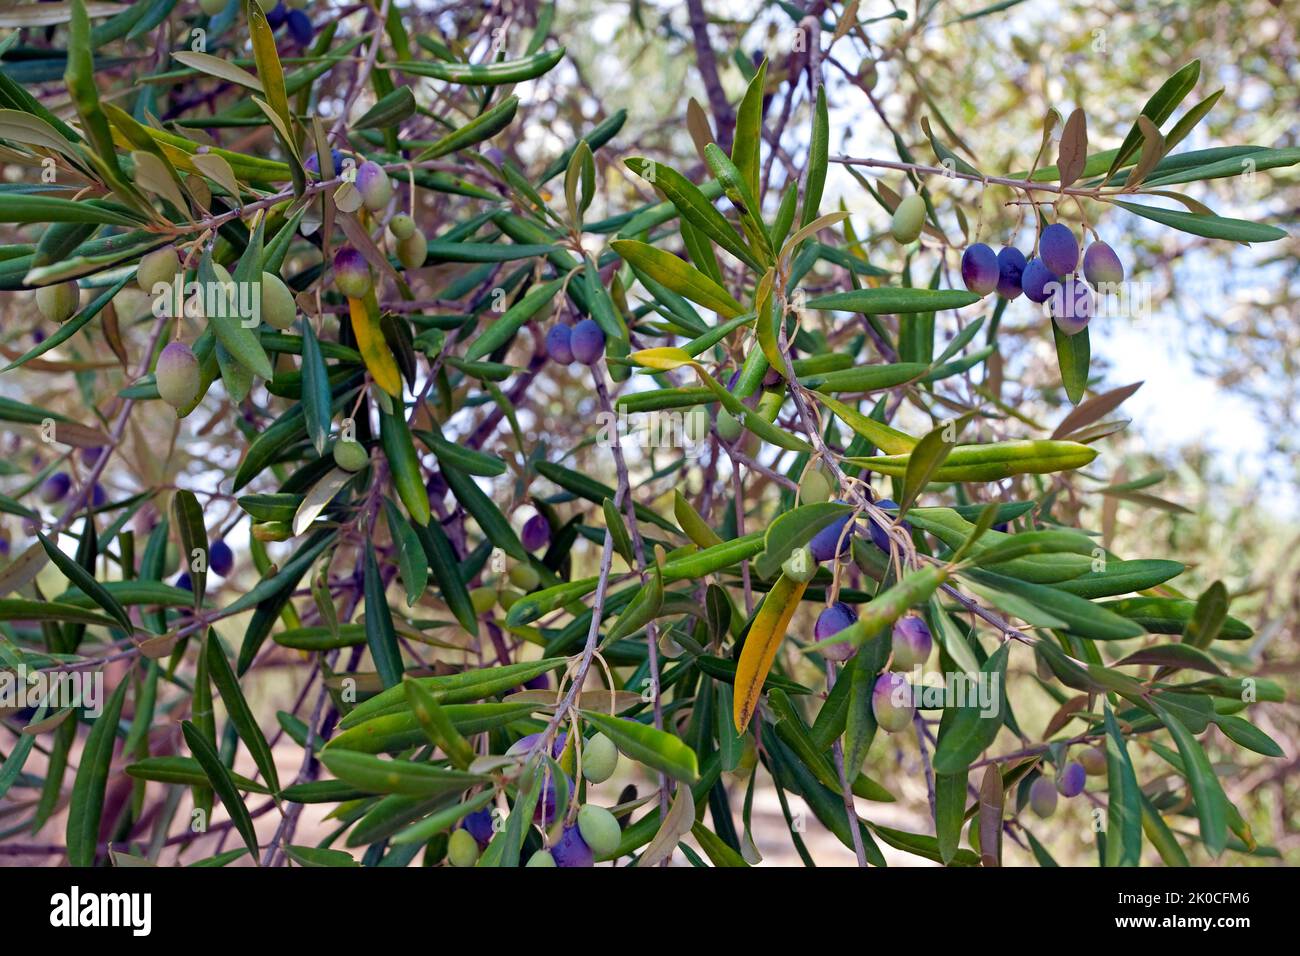 Olivo antico (Olea europaea) con olive mature a Limni Keriou, isola di Zante, Grecia, Europa Foto Stock